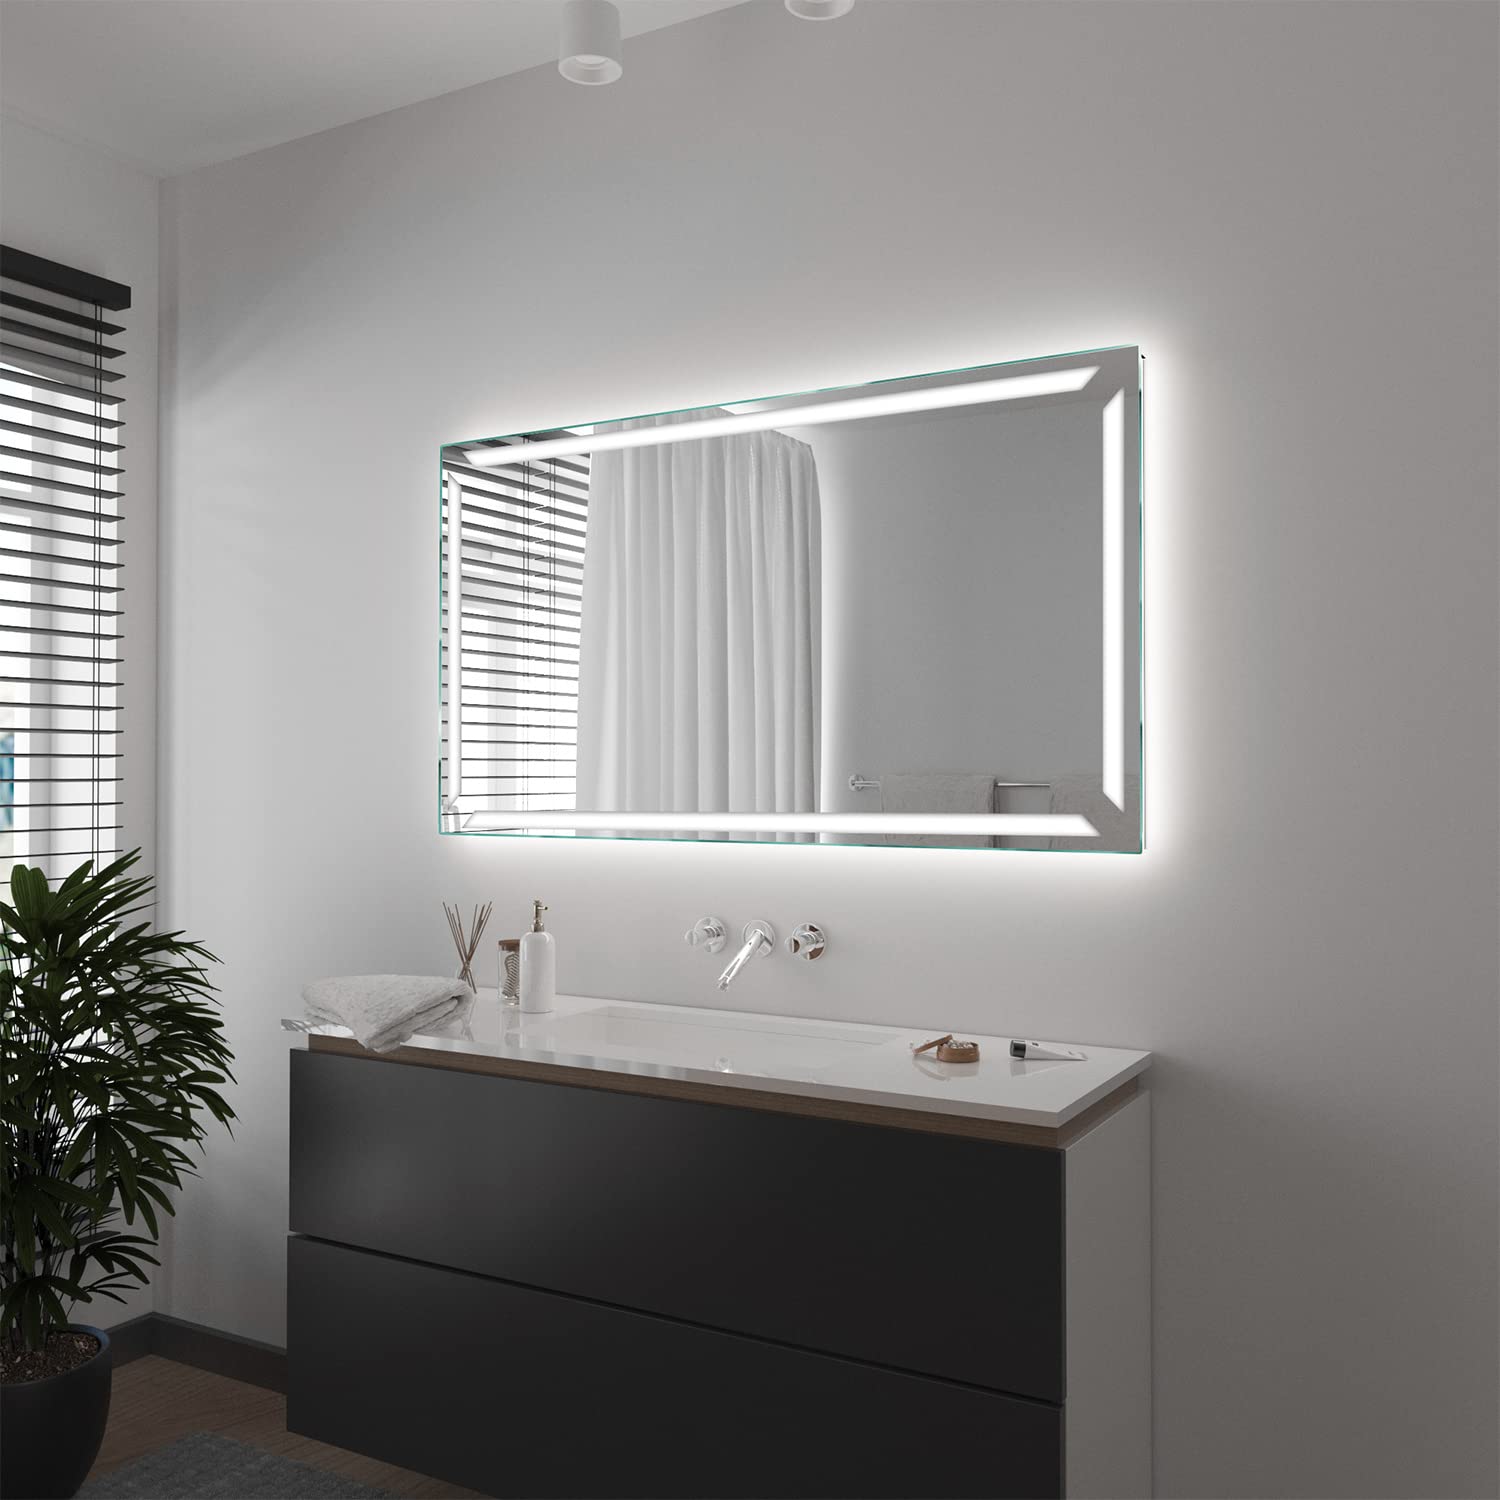 SARAR LED Wandspiegel mit rundum Beleuchtung 150x100 cm Made in Germany Pesaro Eckiger Badspiegel Spiegel mit Beleuchtung Badezimmerspiegel